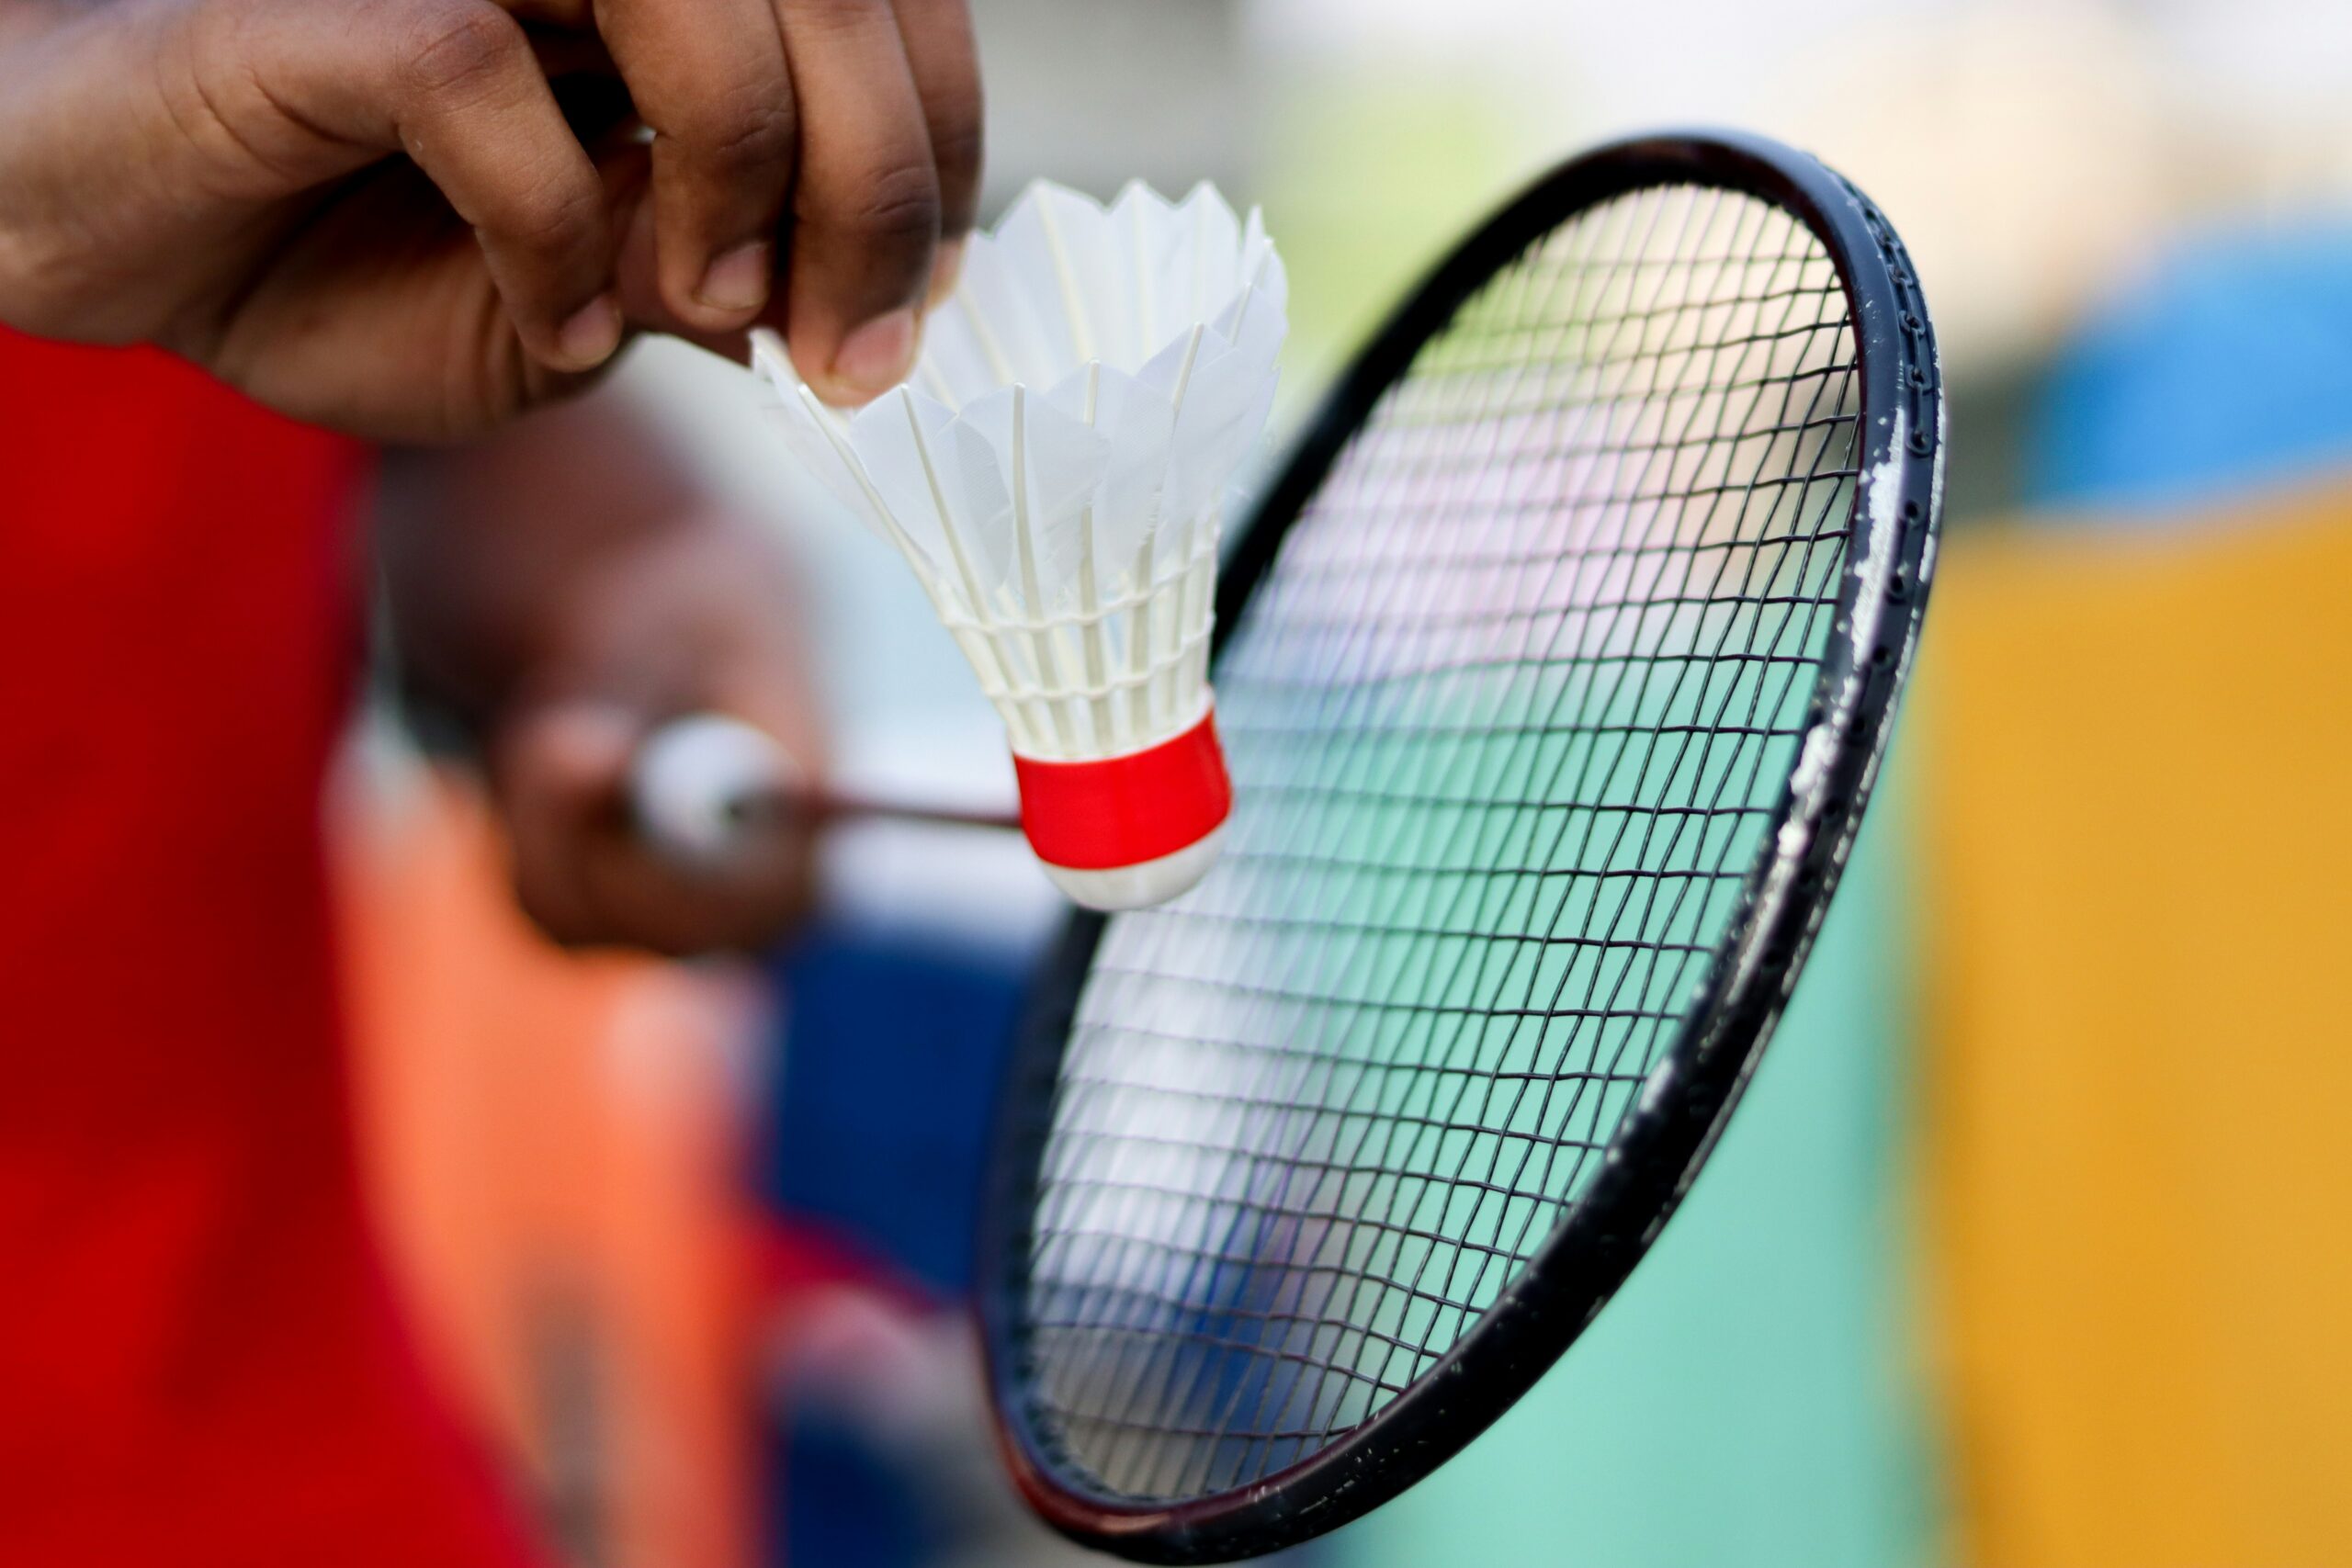 découvrez notre sélection de raquettes de badminton de qualité supérieure pour améliorer votre jeu sur le court.